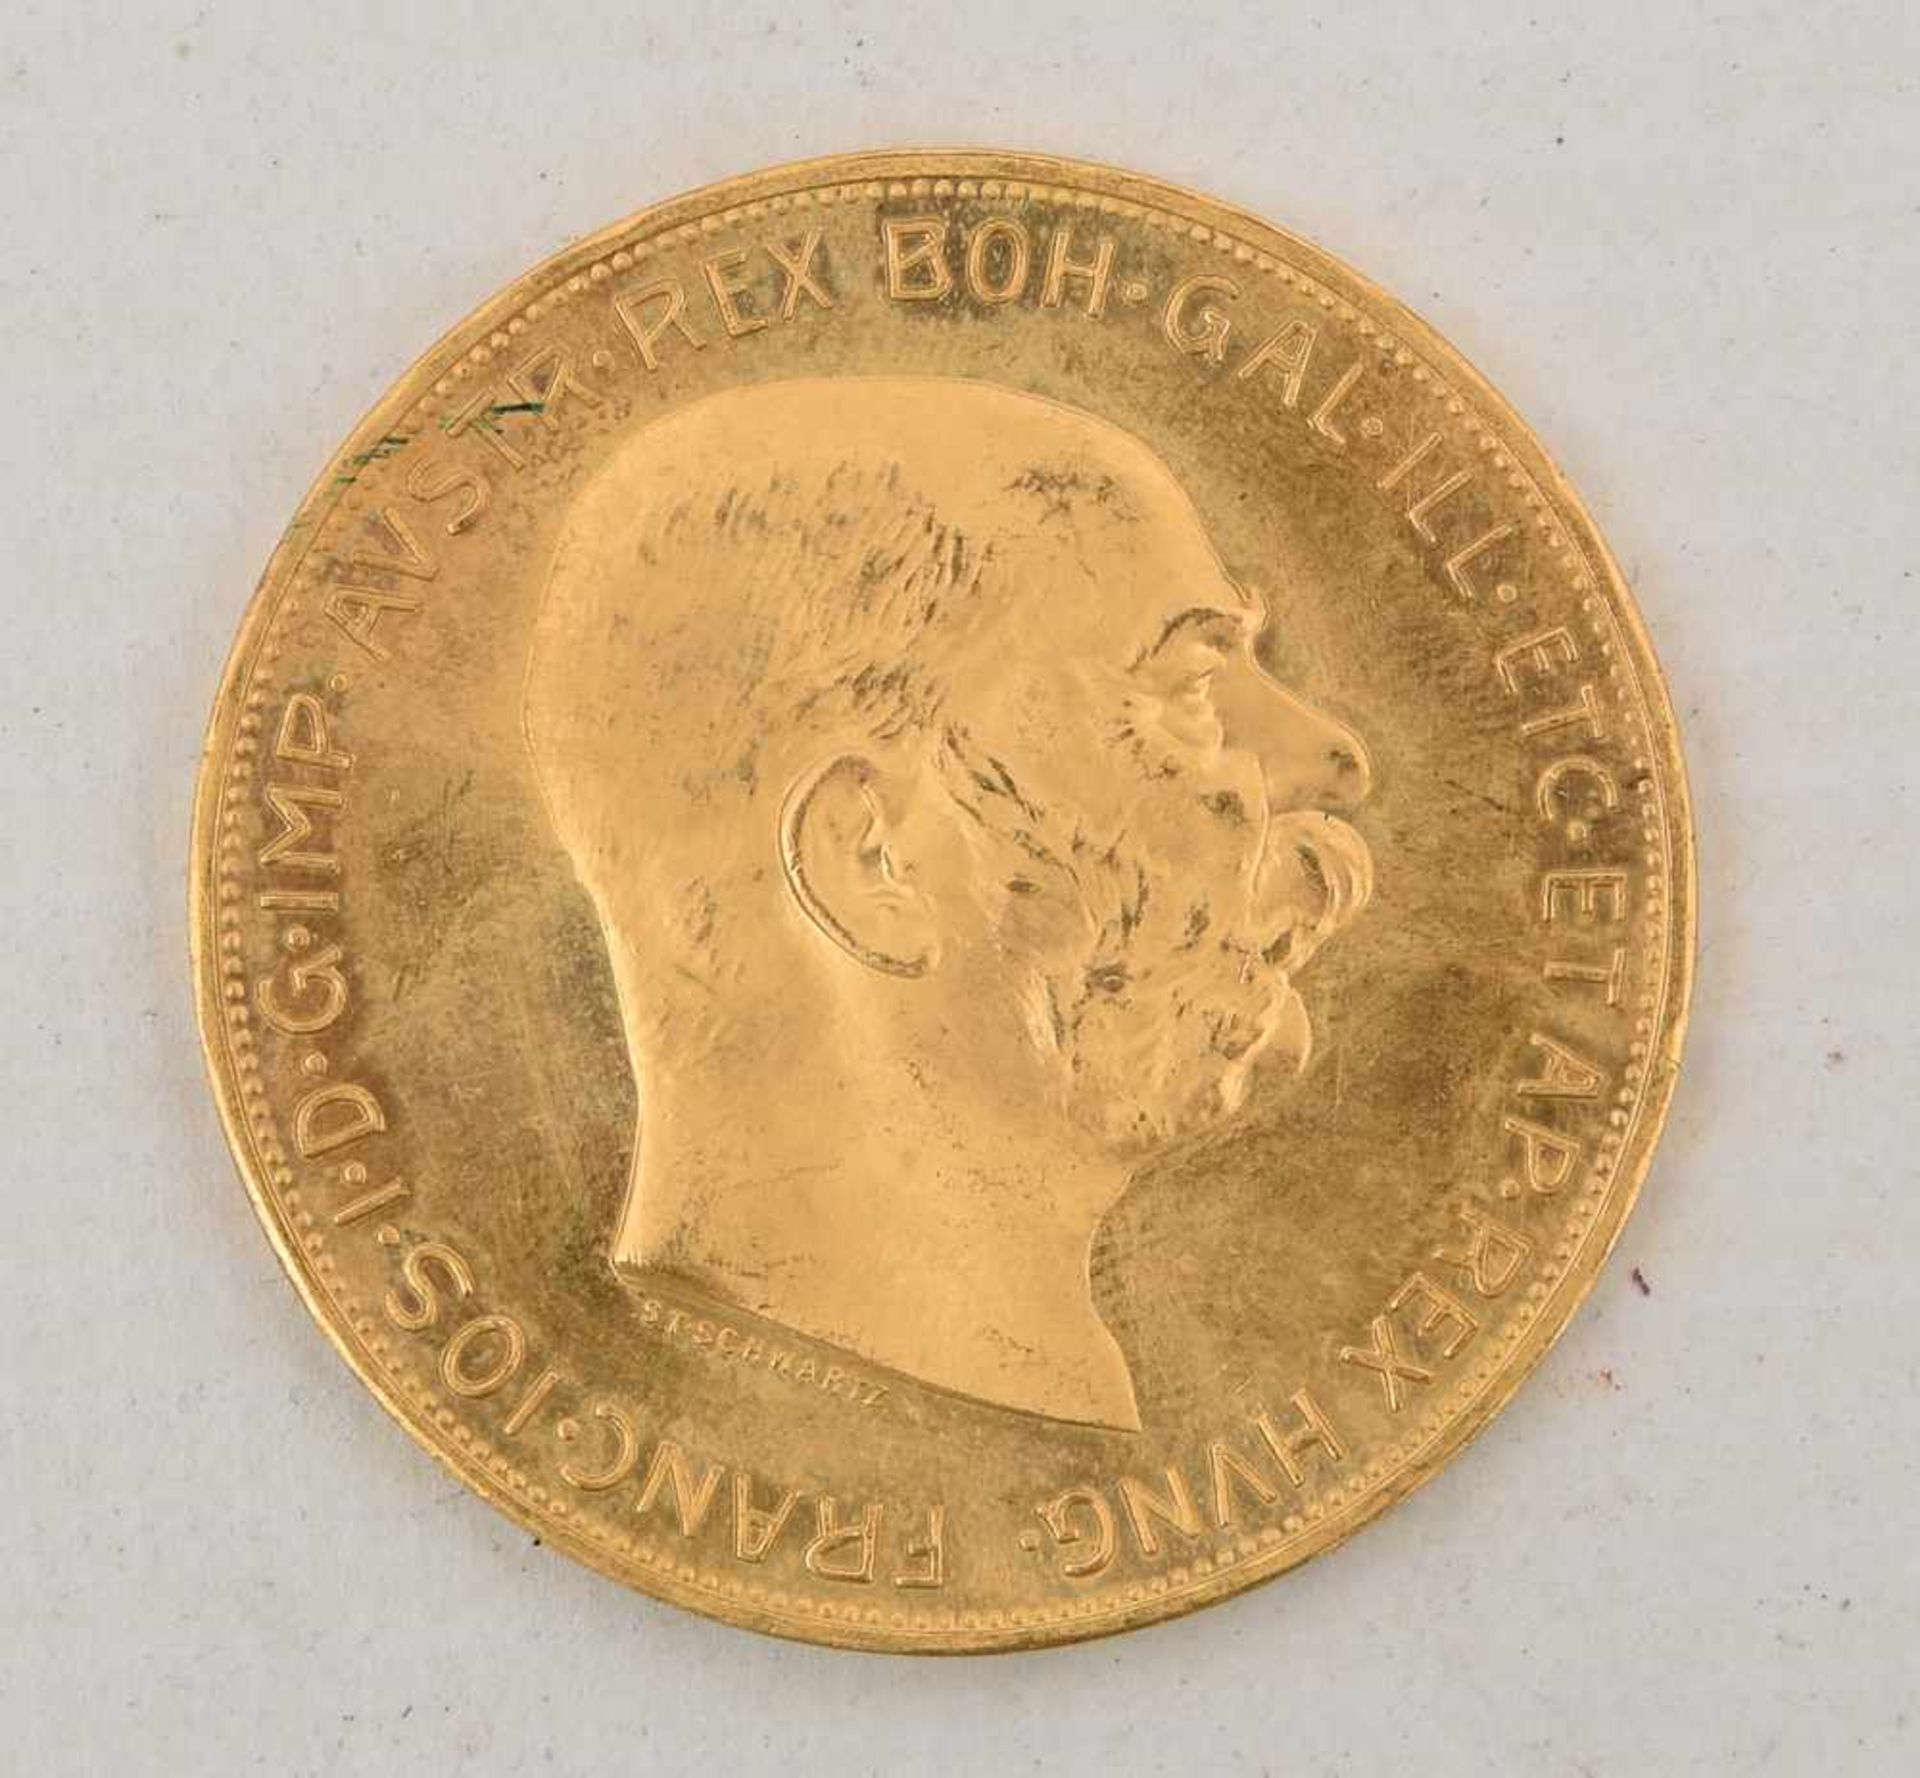 GOLDMÜNZE, 100 Corona 1915 Österreich Münze, Franz Joseph I (10) Material: Gold Gewicht: 33.98 g - Bild 2 aus 2